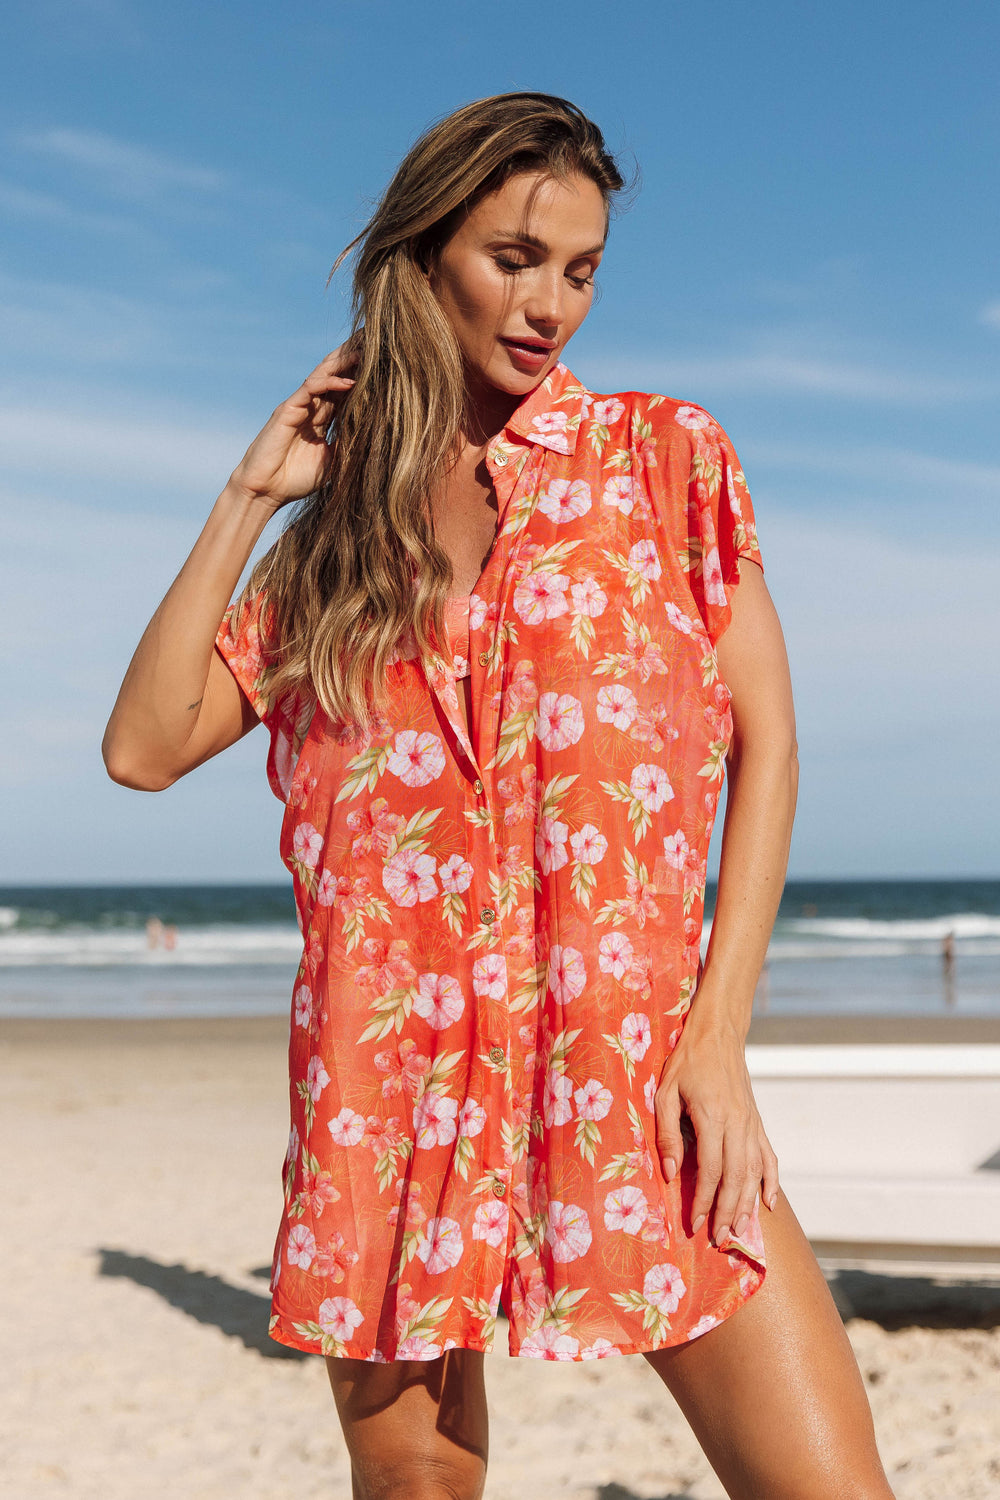 Moda Praia Feminina, saída de praia, peça-chave para o seu guarda-roupa de verão, com versatilidade e elegância para os dias ensolarados na praia. Na estampa exclusivas, Hibiscos Coral da Lili Sampedro.